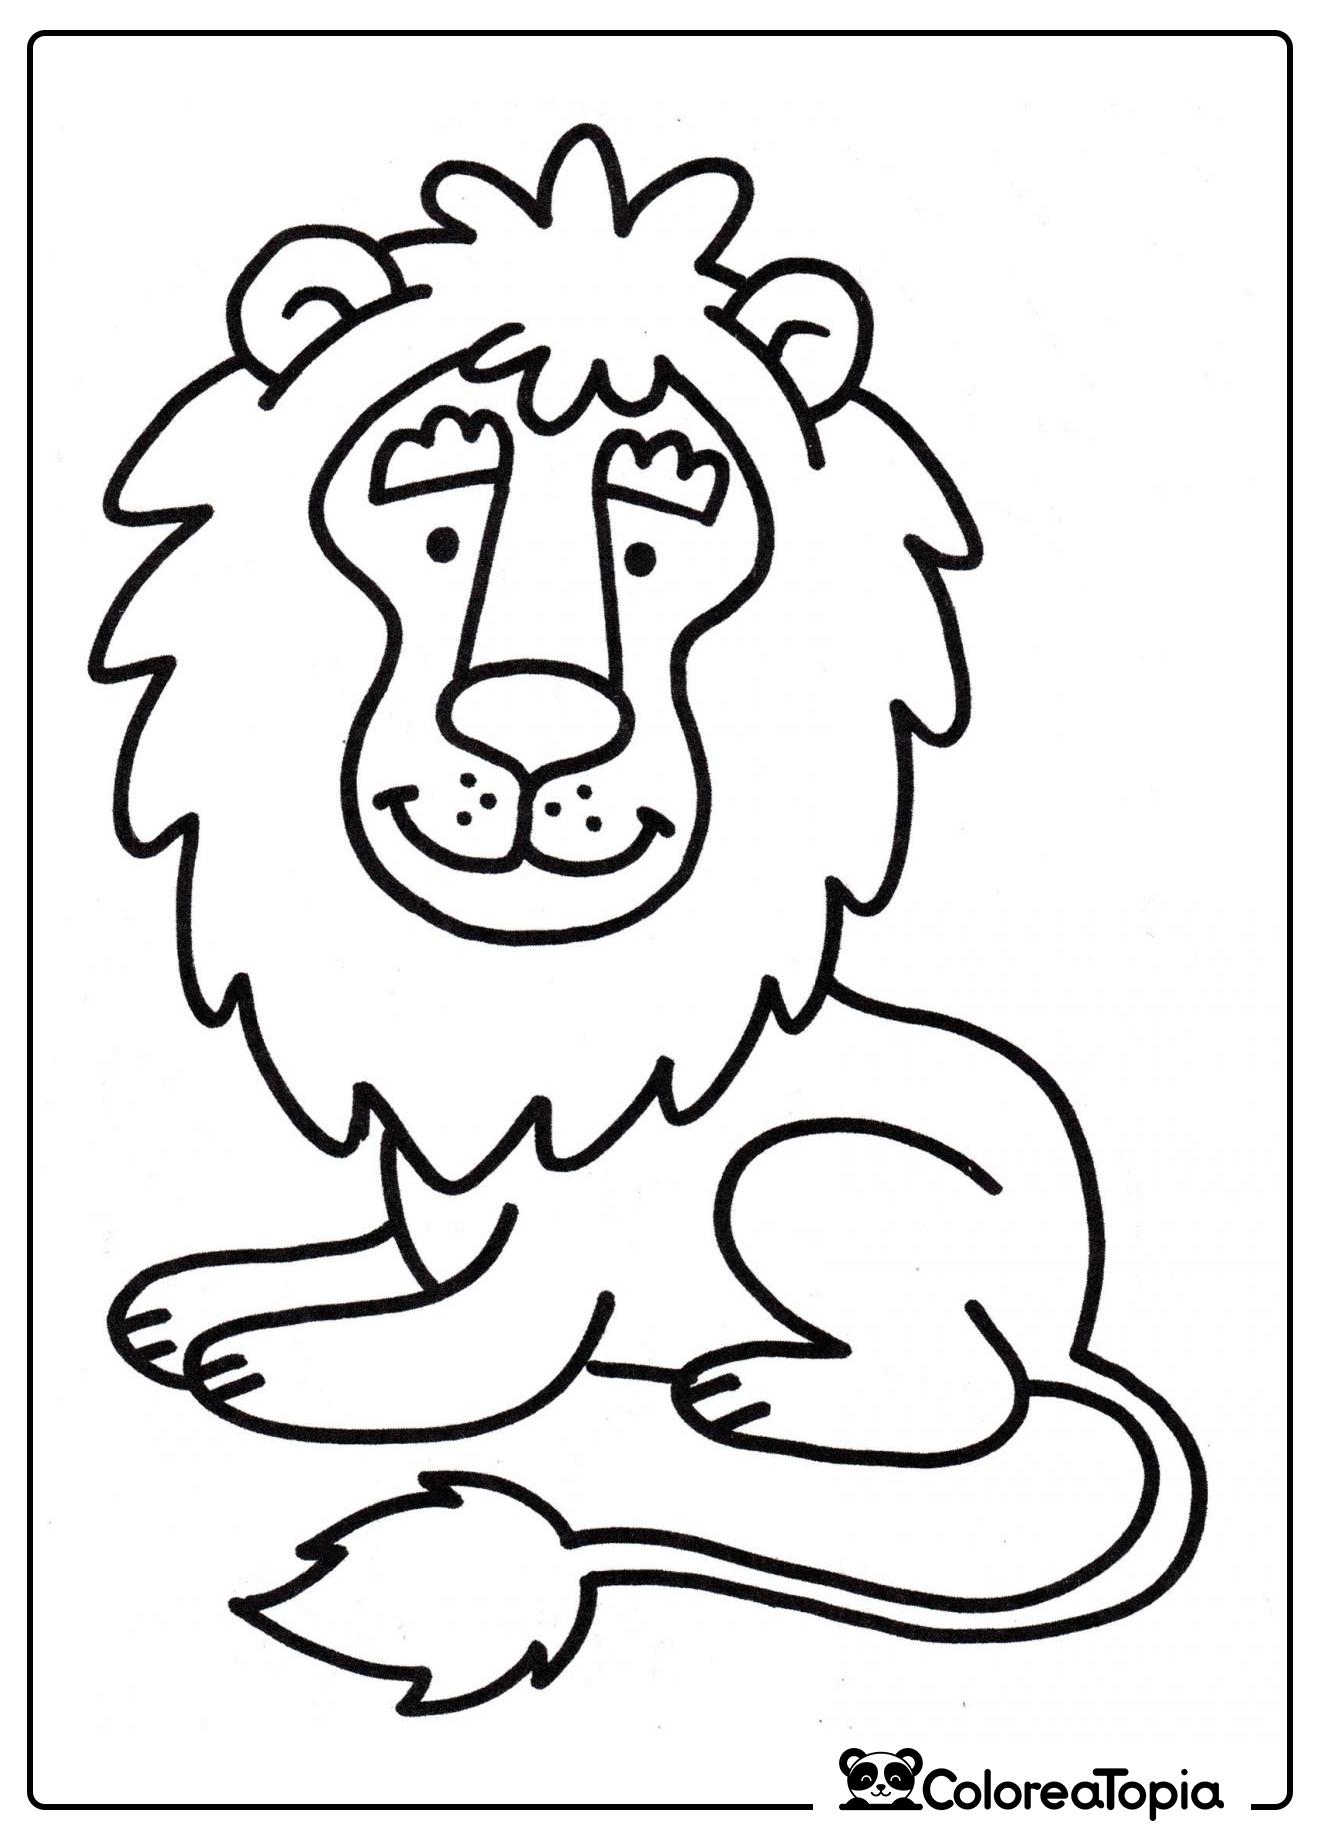 León lindo - dibujo para colorear